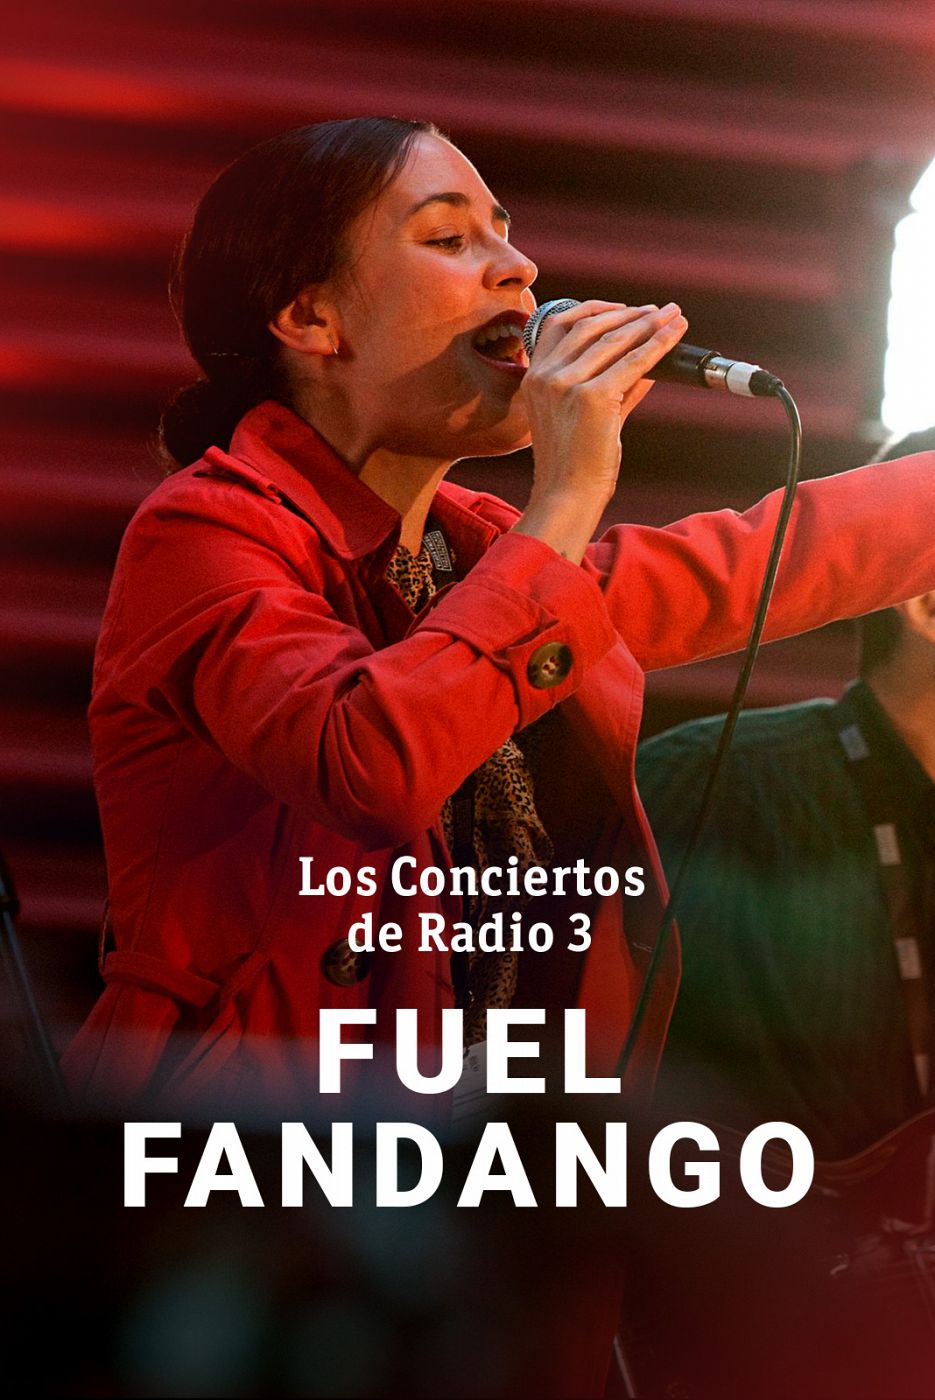 Los conciertos de Radio 3 - Fuel Fandango - ver ahora